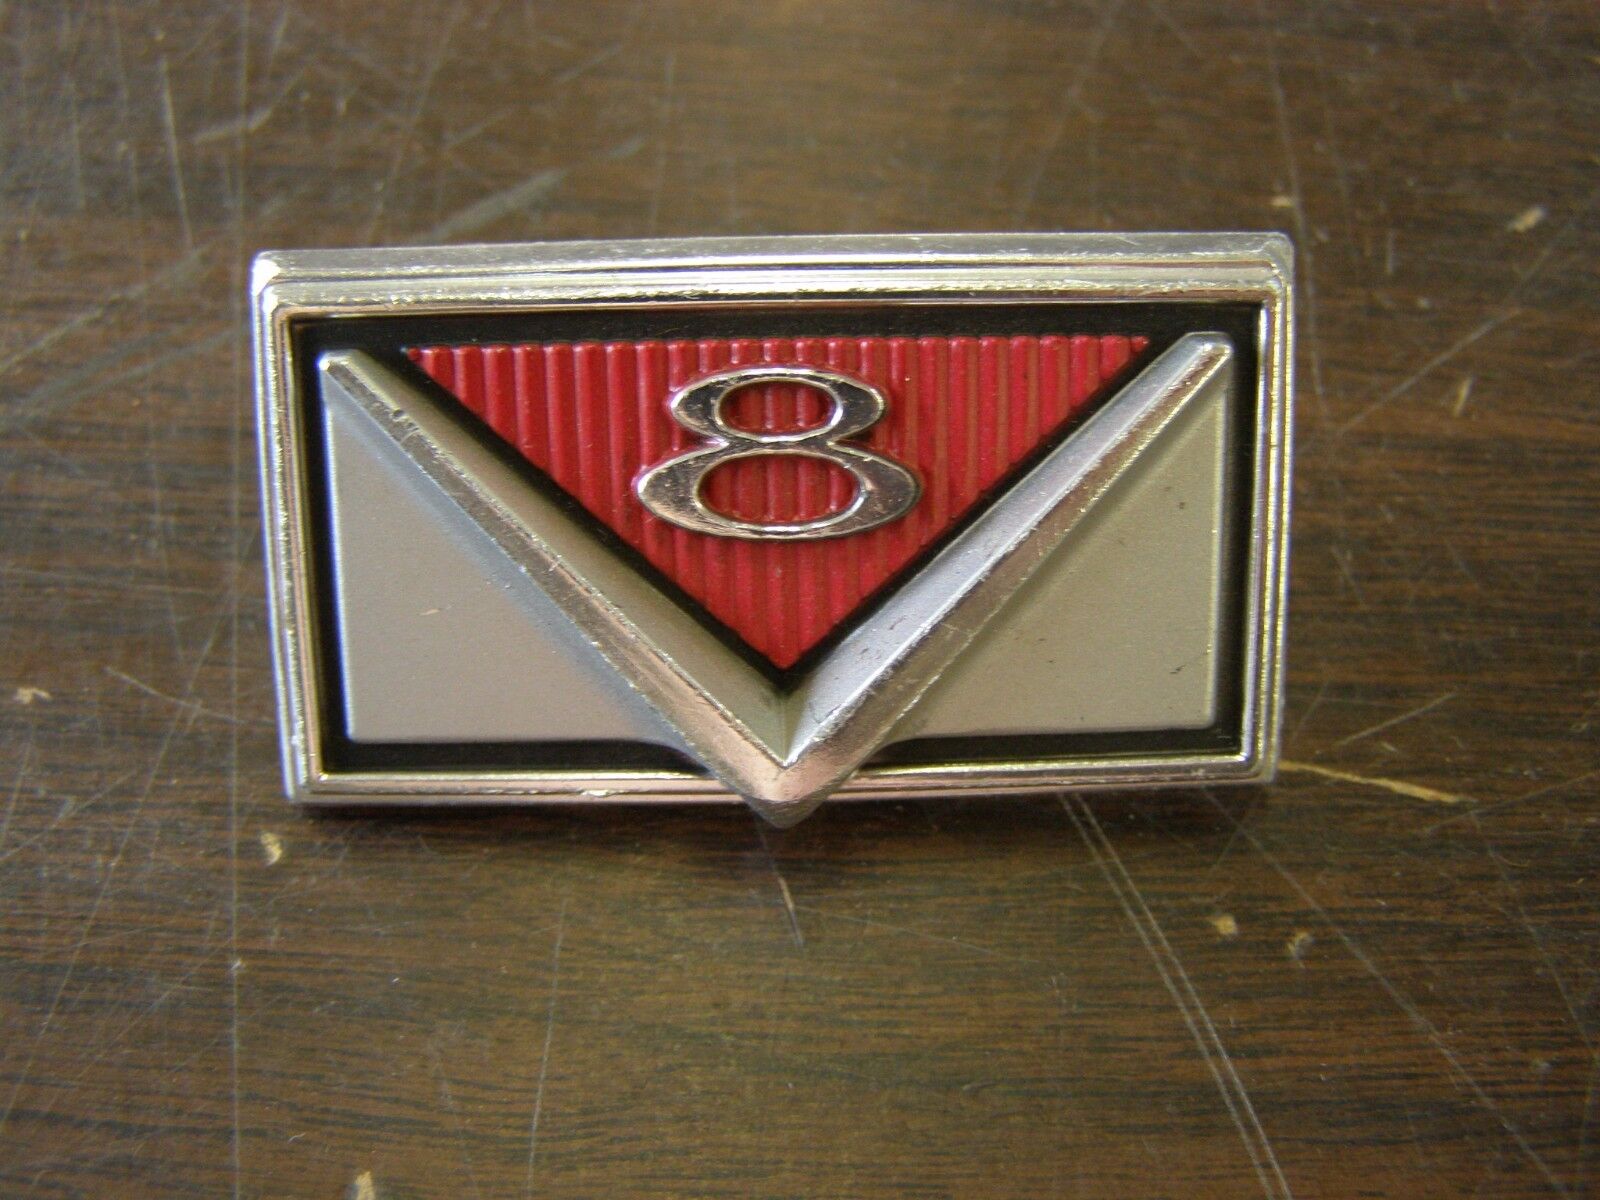 NOS OEM Ford 1966 Mercury Comet V8 Grille Ornament Emblem Trim